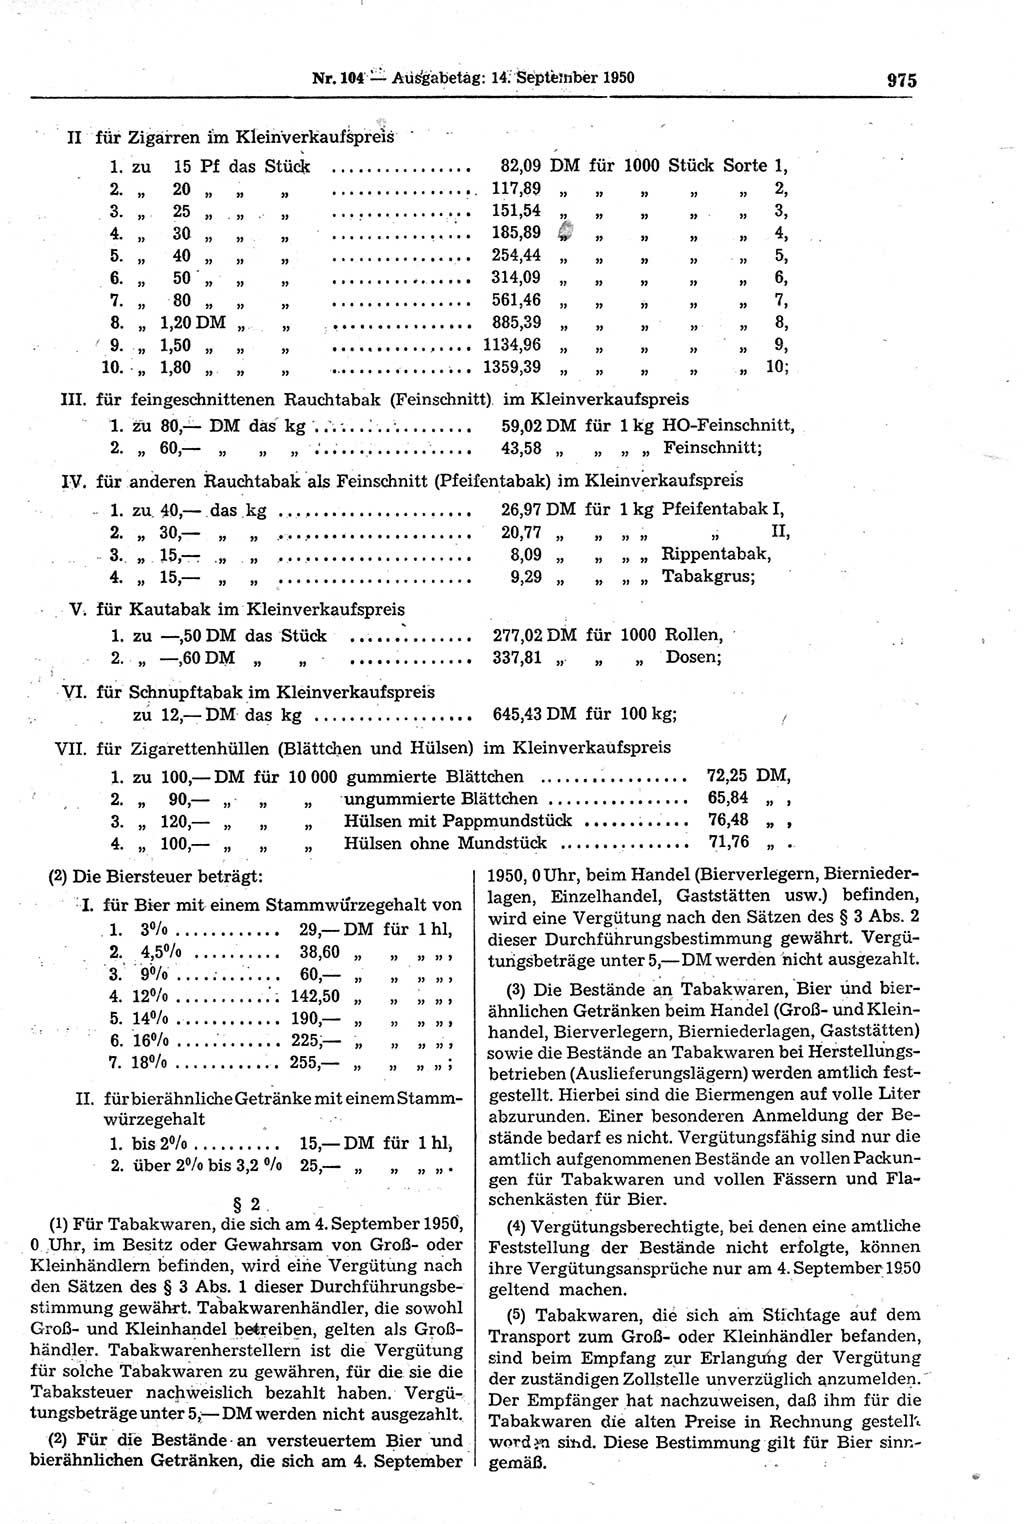 Gesetzblatt (GBl.) der Deutschen Demokratischen Republik (DDR) 1950, Seite 975 (GBl. DDR 1950, S. 975)